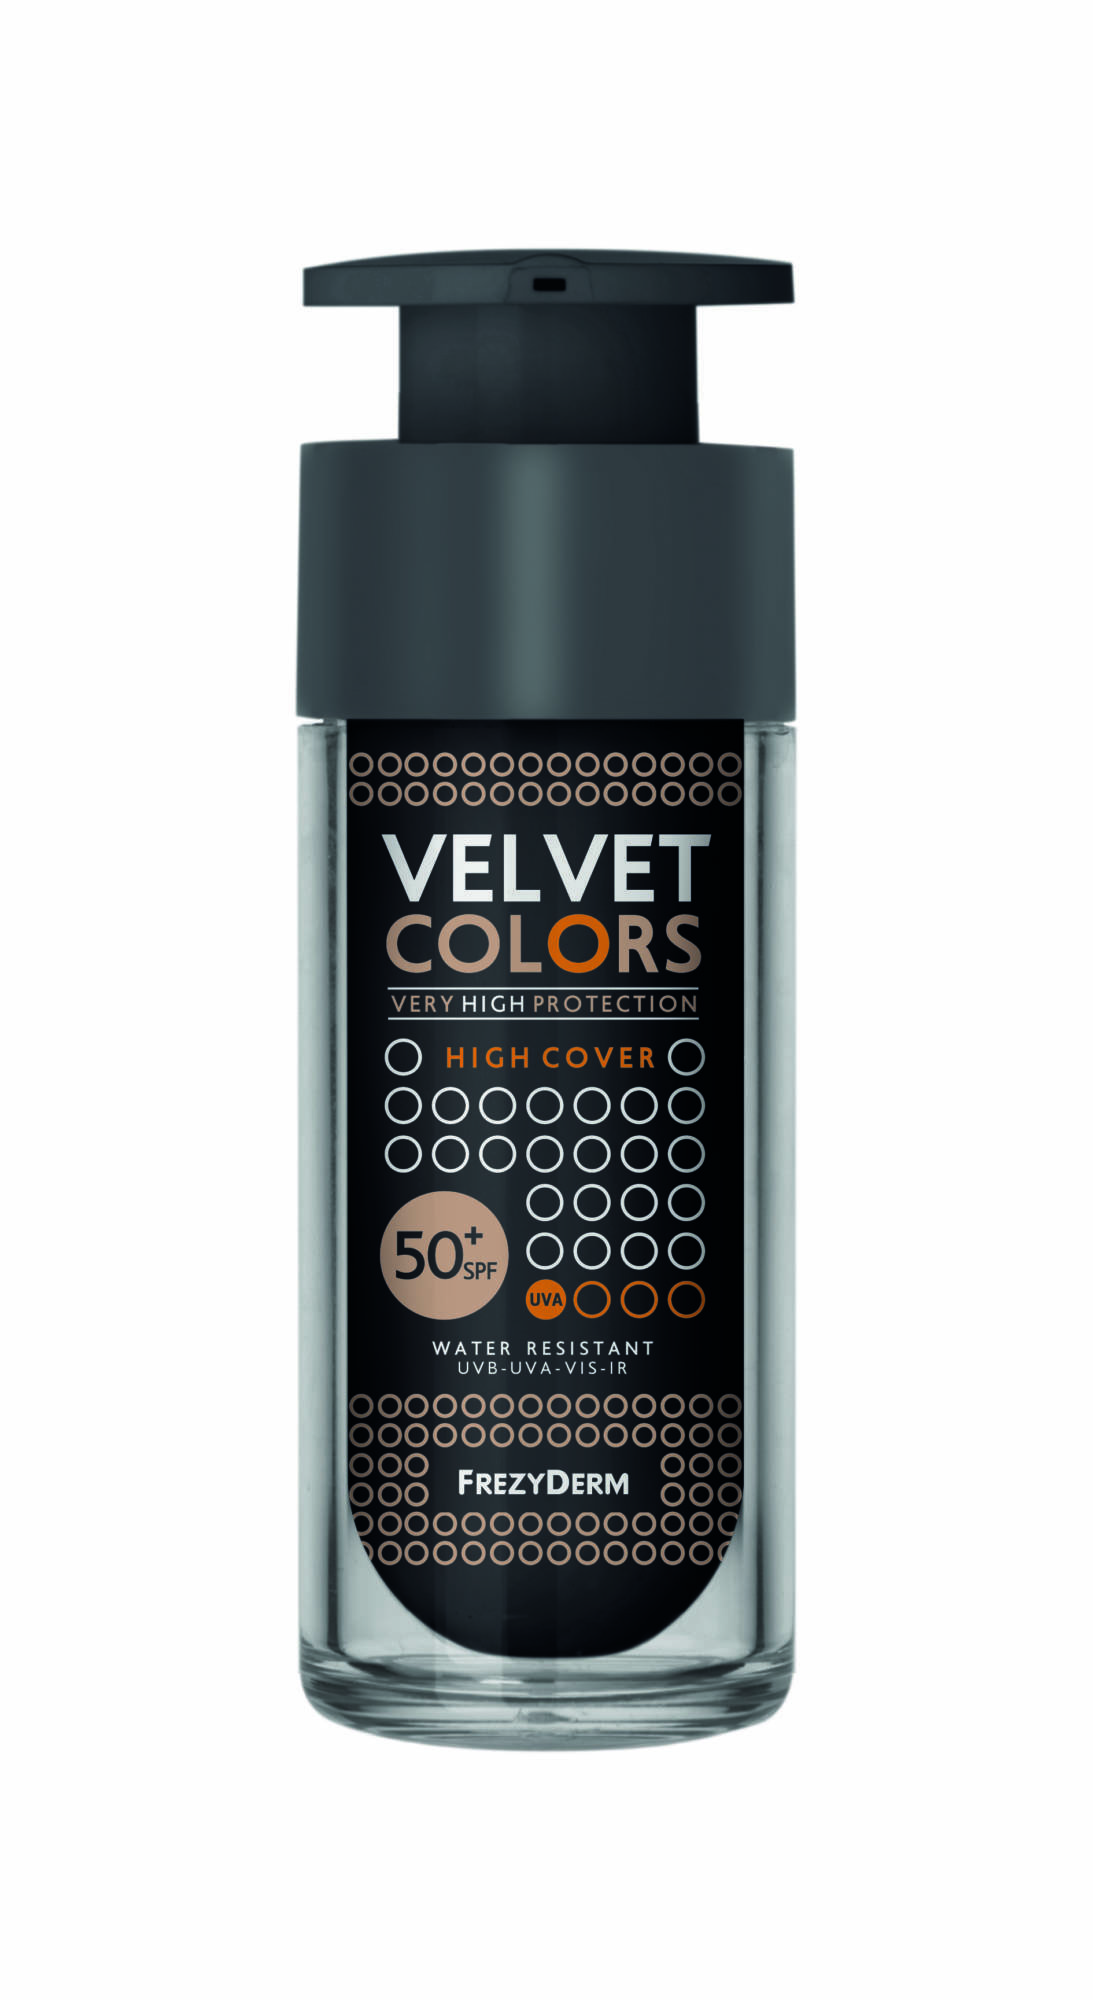 Velvet Colors High Cover Spf50 2